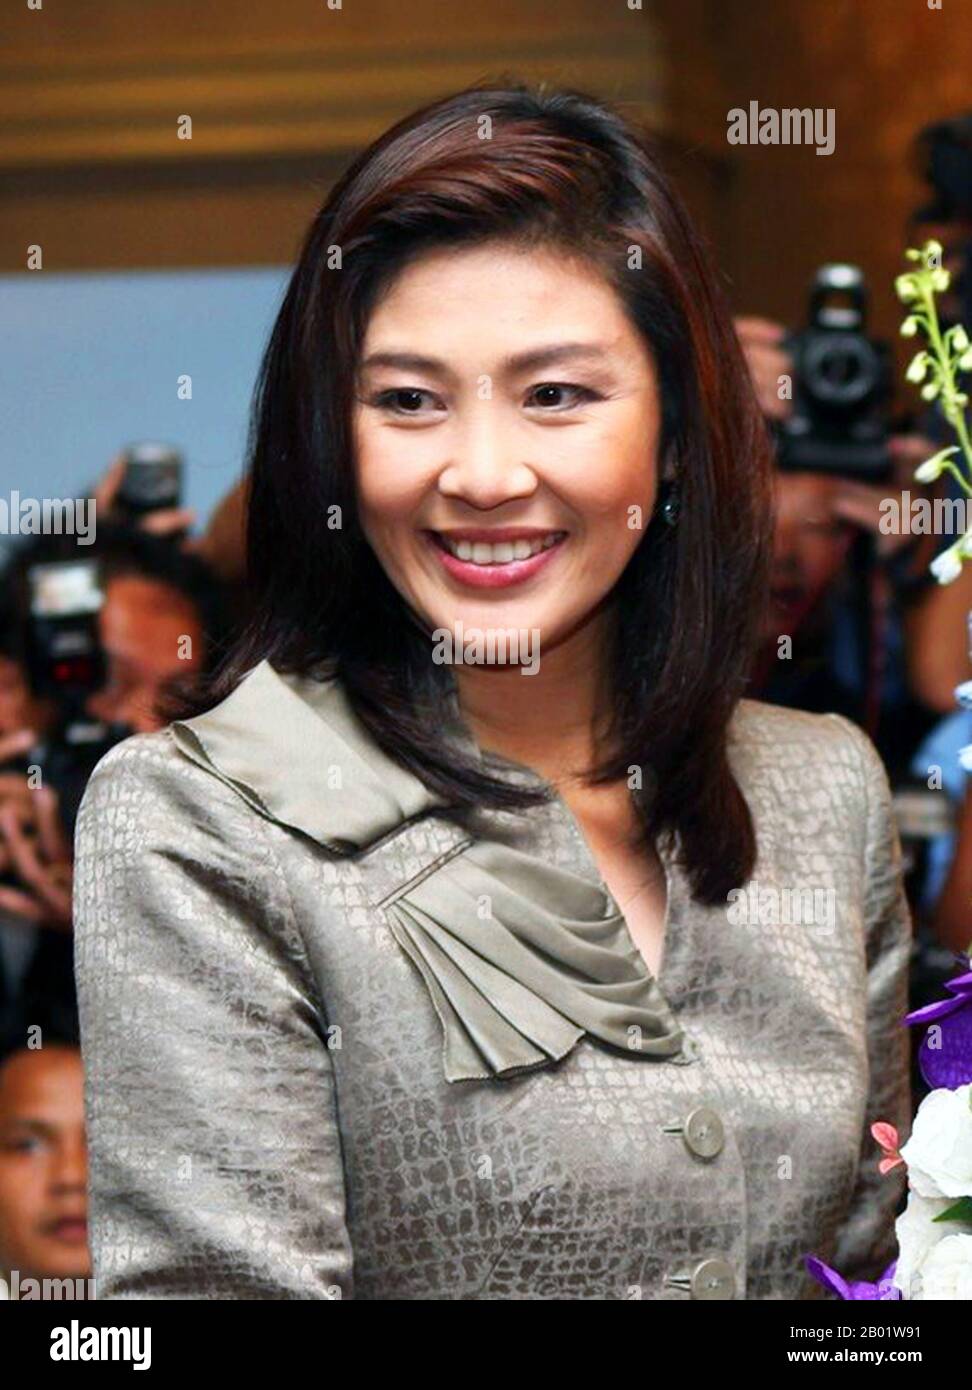 Thailand: Yingluck Shinawatra (* 21. Juni 1967 in Bangkok), ehemaliger thailändischer Premierminister (5. August 2011 bis 7. Mai 2014), am 4. Juli 2011 in der Botschaft der Vereinigten Staaten in Bangkok. Yingluck Shinawatra, auch Pou genannt, ist eine thailändische Geschäftsfrau, Galionsfigur der Pheu Thai Party und ehemaliger Premierminister Thailands, der sich derzeit im Exil befindet, nachdem sie nach dem Militärputsch im Mai 2014 aus dem Land geflohen war. Sie ist die jüngere Schwester des ehemaligen Premierministers Thaksin Shinawatra, der ebenfalls durch einen Militärputsch gestürzt wurde und bis zur Rückkehr 2023 ins Exil ging. Stockfoto